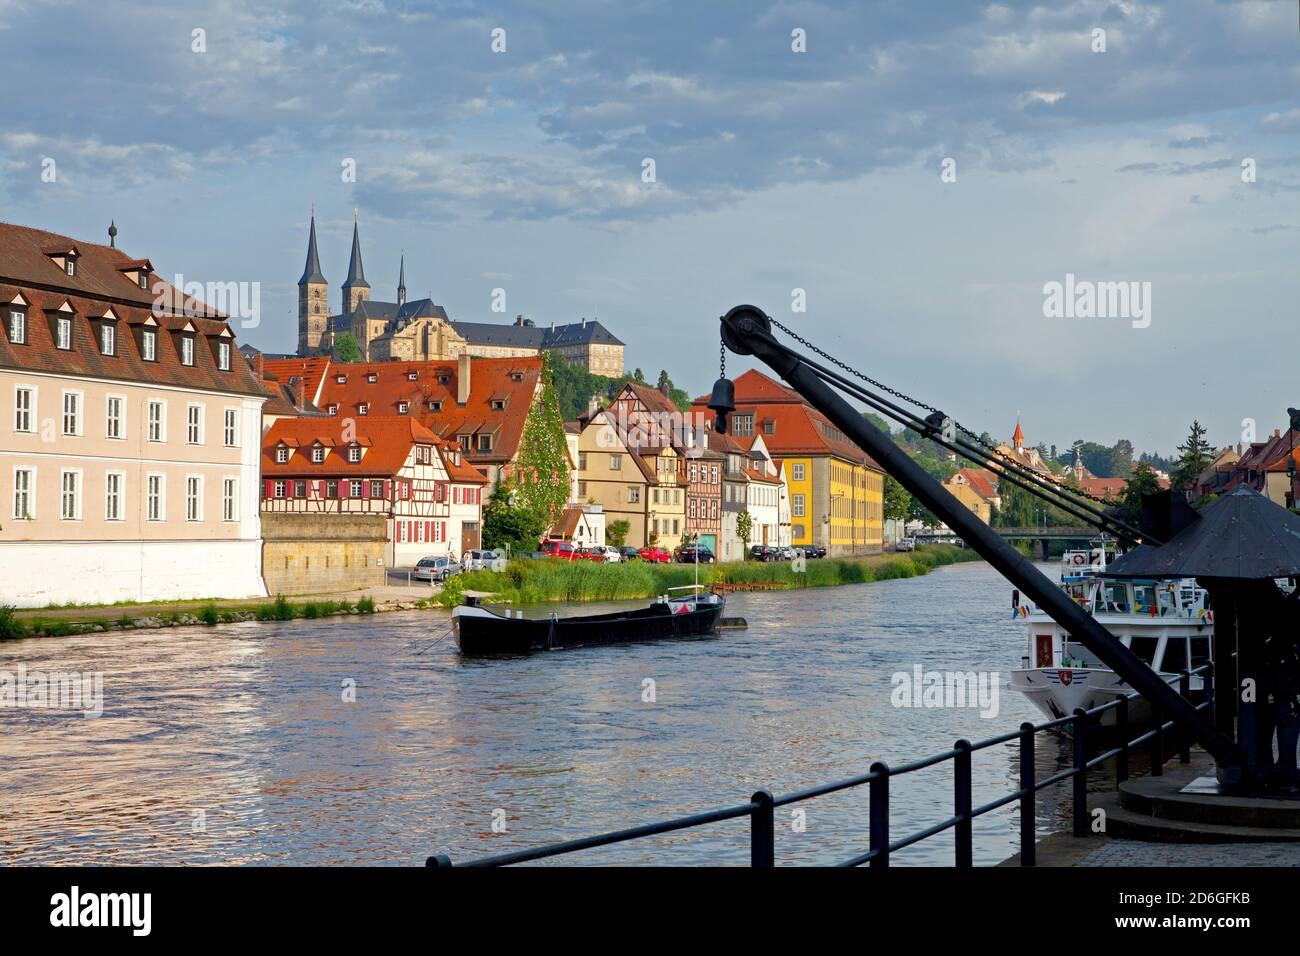 Bayern,Oberfranken,Stadt Bamberg, am Kranen mit Blick auf den Michaelsberg Stock Photo